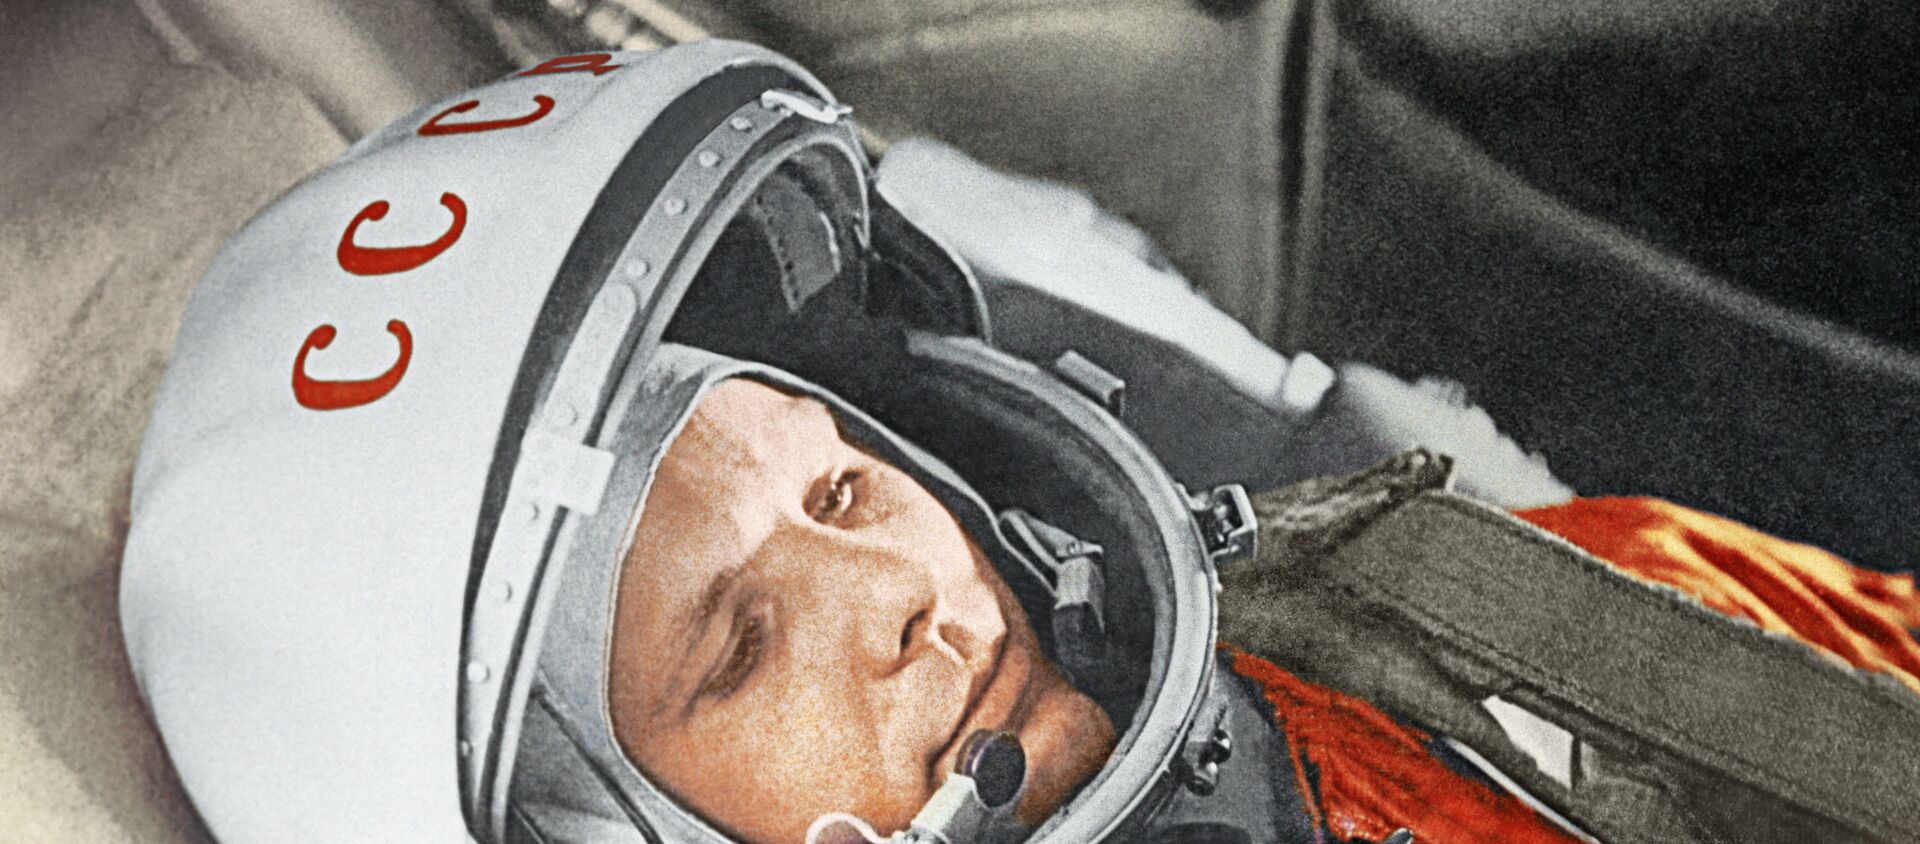 Космонавт Юрий Гагарин в кабине космического корабля Восток-1 перед стартом. Космодром Байконур, 12 апреля 1961 год. - Sputnik Абхазия, 1920, 12.04.2021